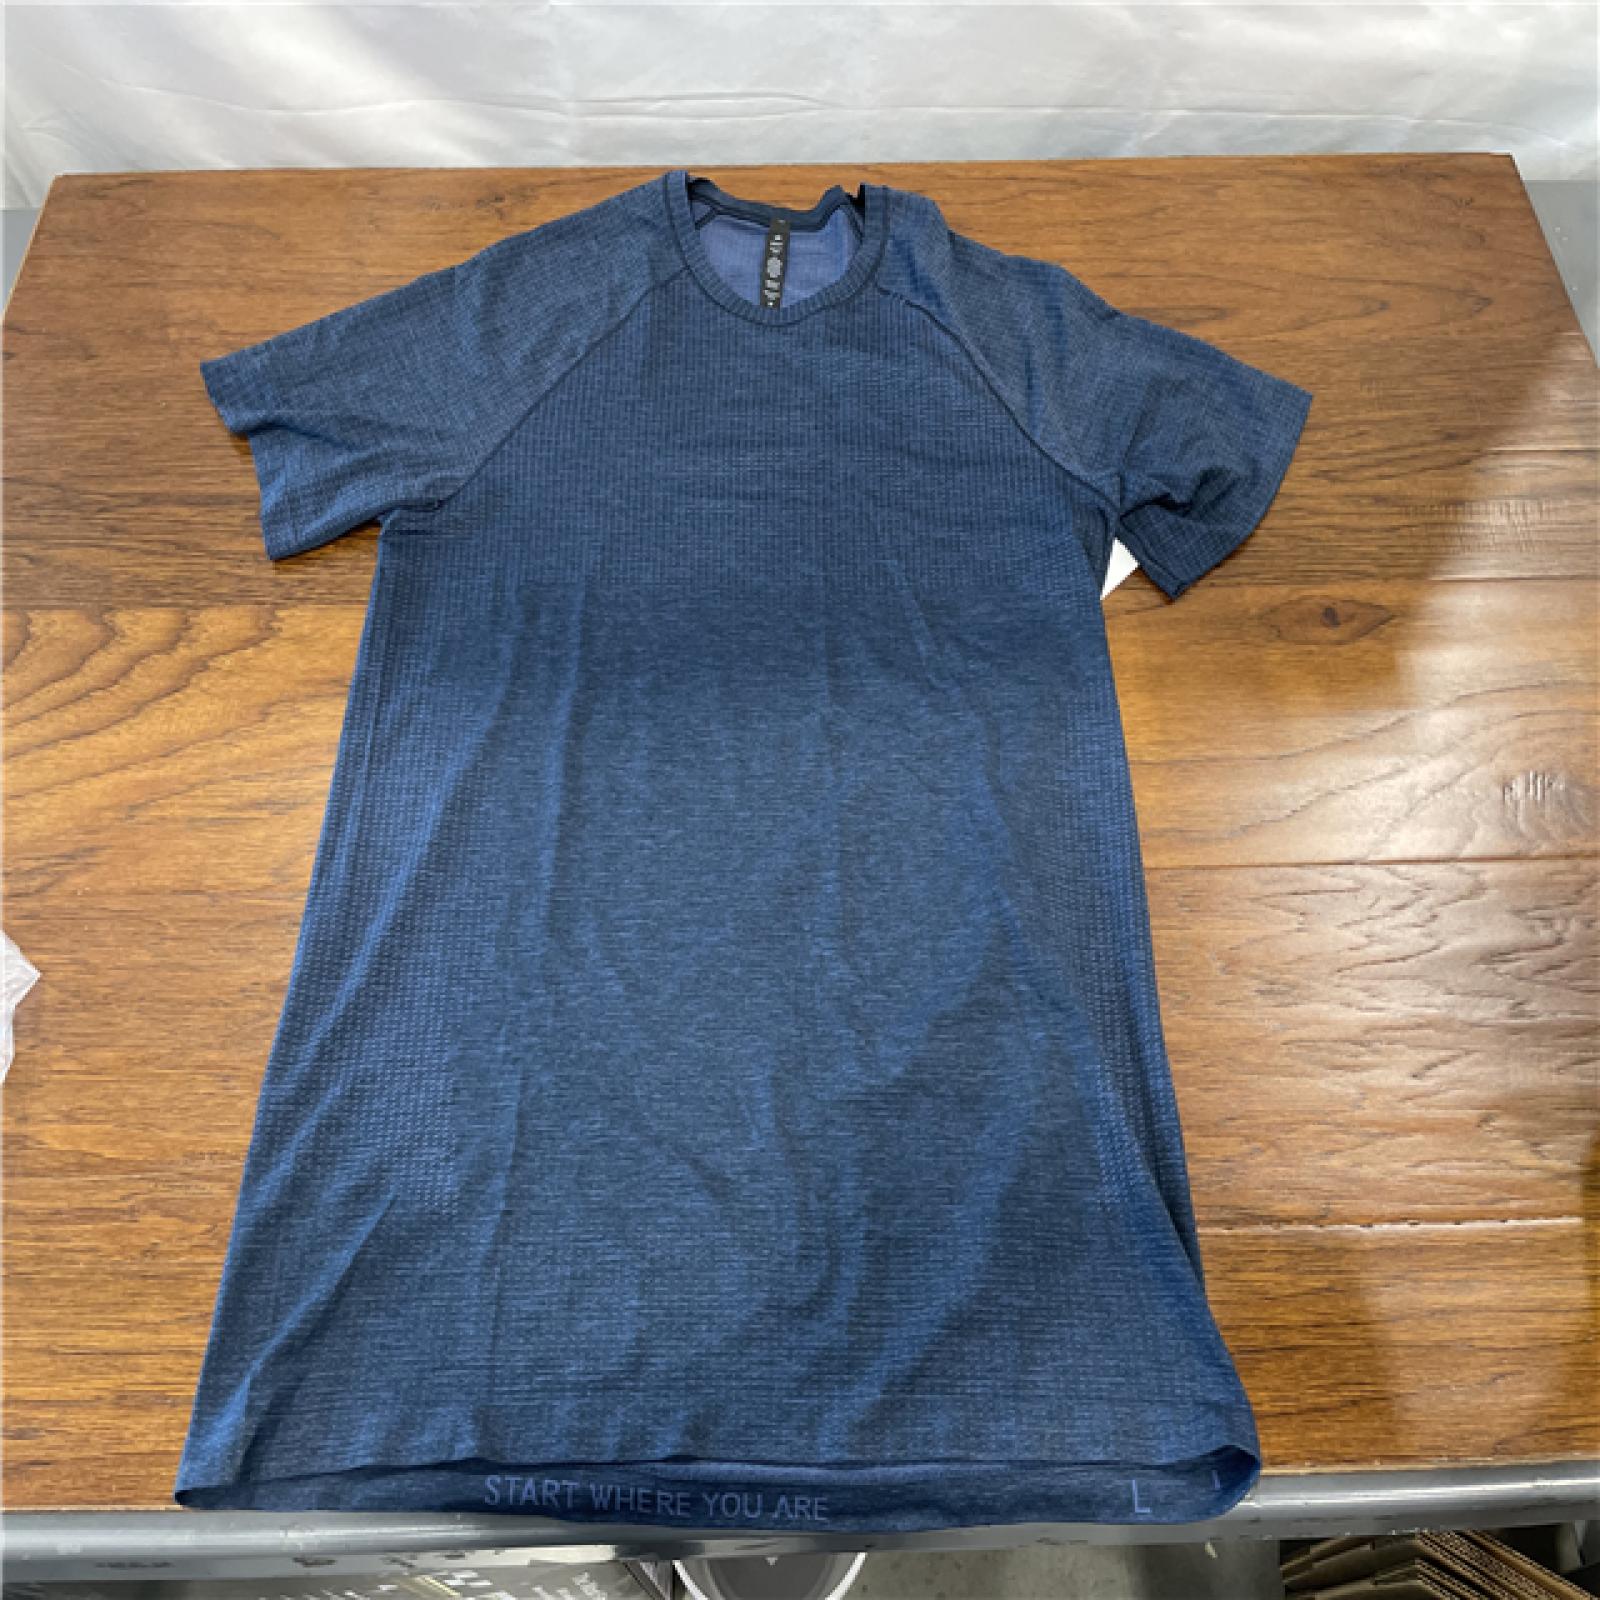 NEW! Lululemon Metal Vent Tech Short-Sleeve Shirt - Blue/True Navy SZ L